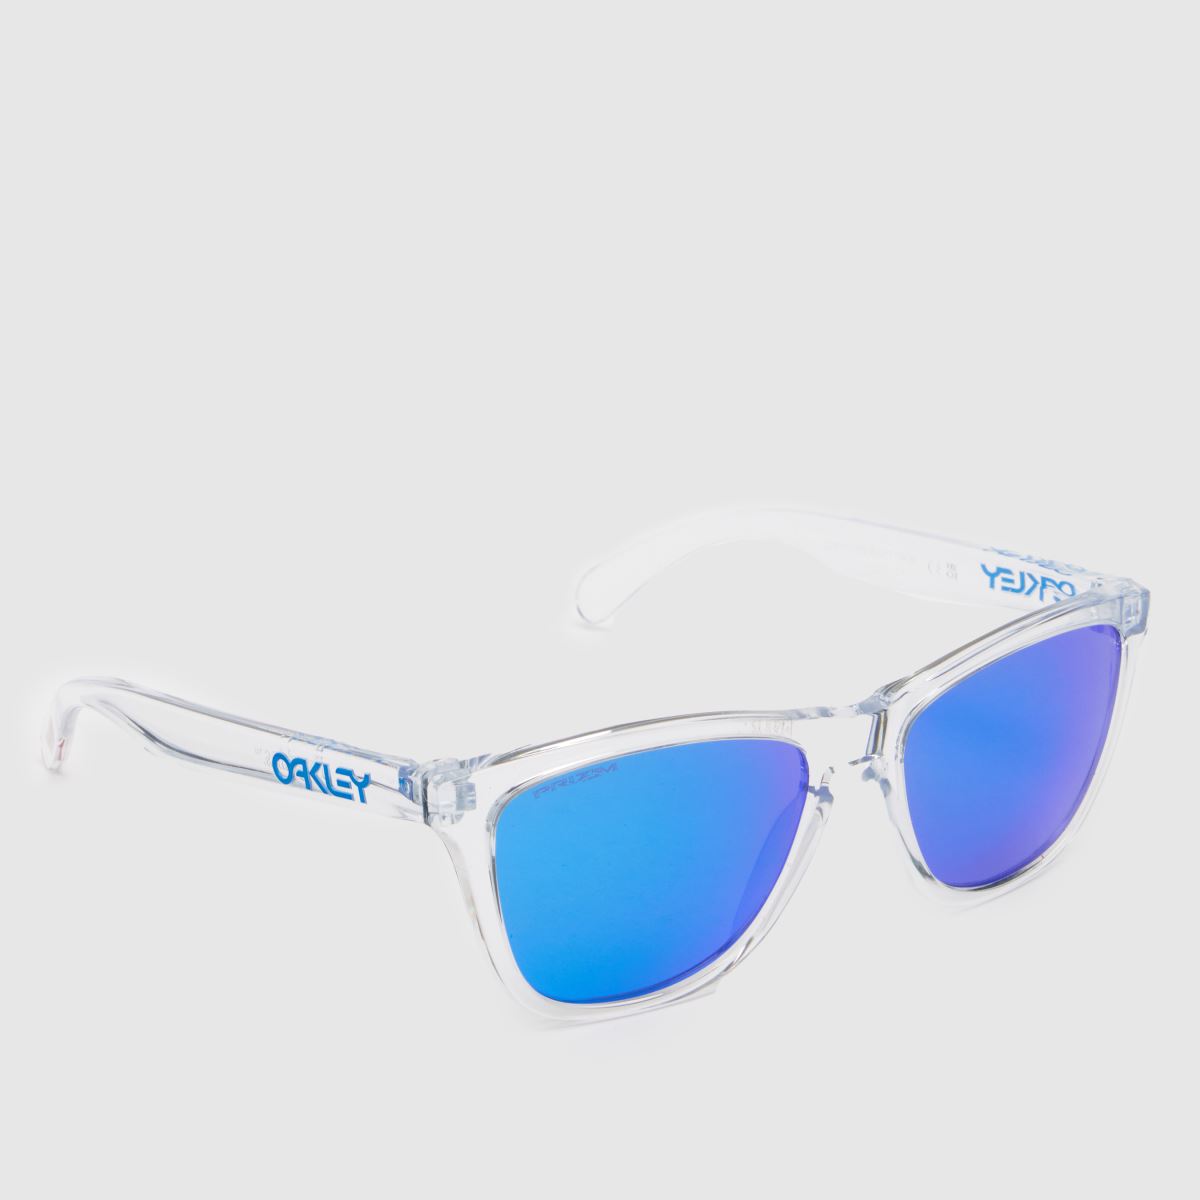 Oakley clear frogskins sunglasses